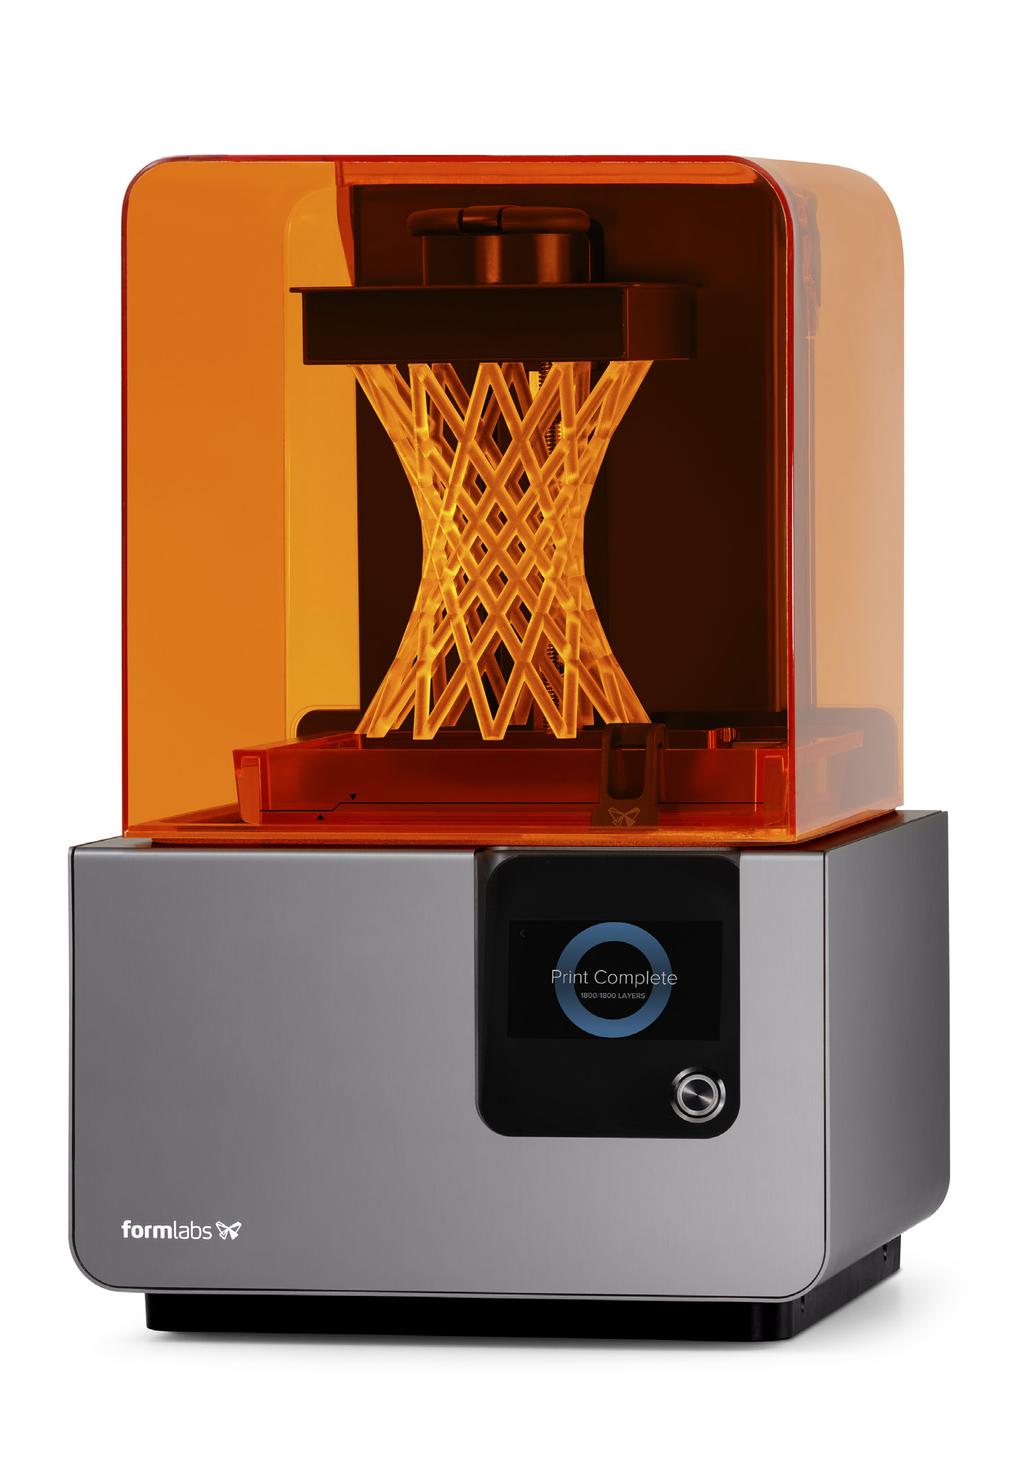 DRUK 3D Formlabs Form 2 drukarka 3D do zastosowań w ortodoncji DUŻA PLATFORMA DRUKU ATRAKCYJNA CENA WYŚWIETLACZ LCD WYGODNE OPROGRAMOWANIE IDEALNA DO ORTODONCJI Ekonomiczna drukarka 3D do zastosowań